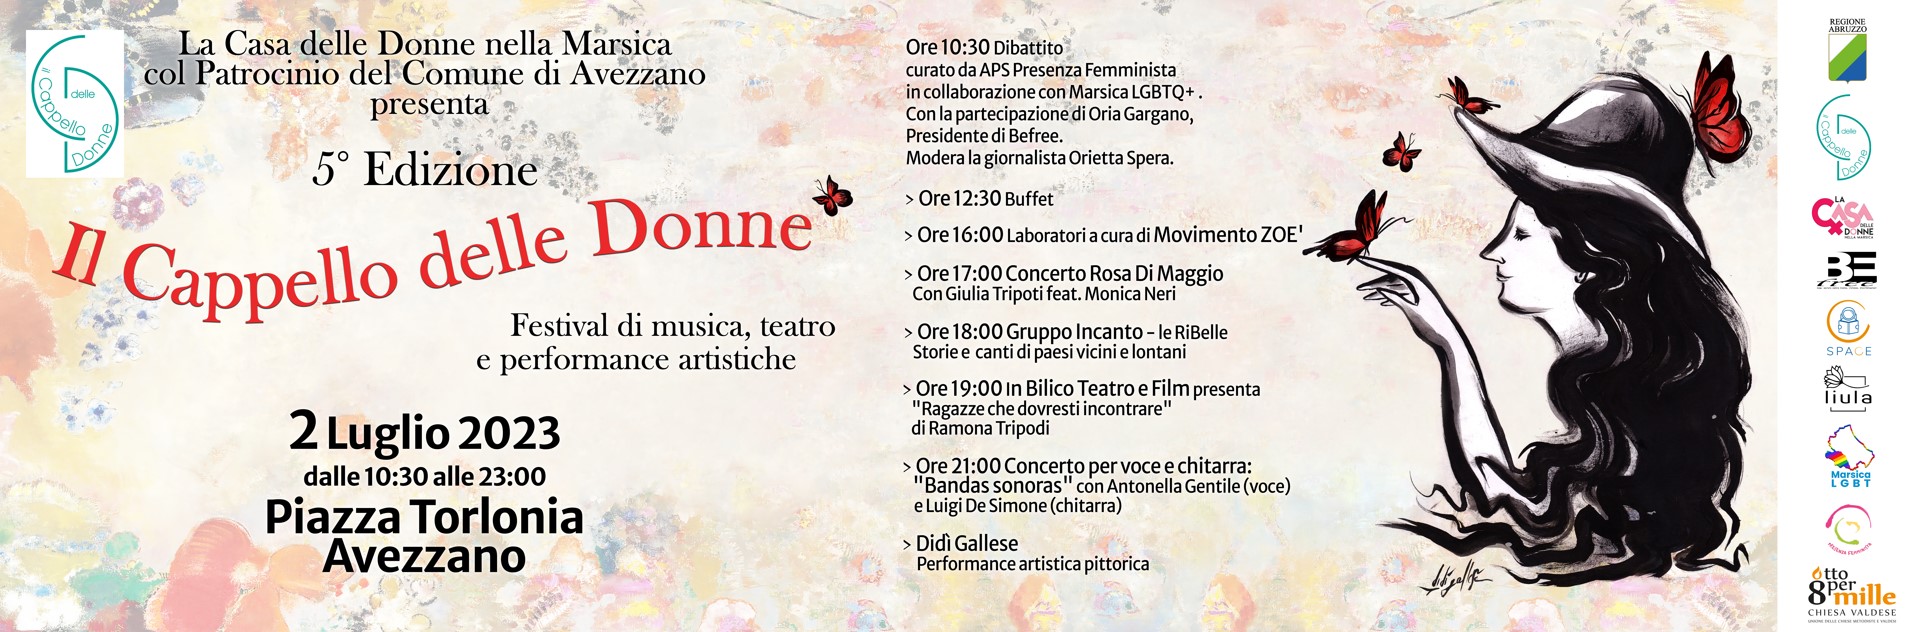 ROSA DI MAGGIO – Giulia Tripoti feat. Monica Neri @ Festival Il Cappello delle Donne, Marsica, Avezzano